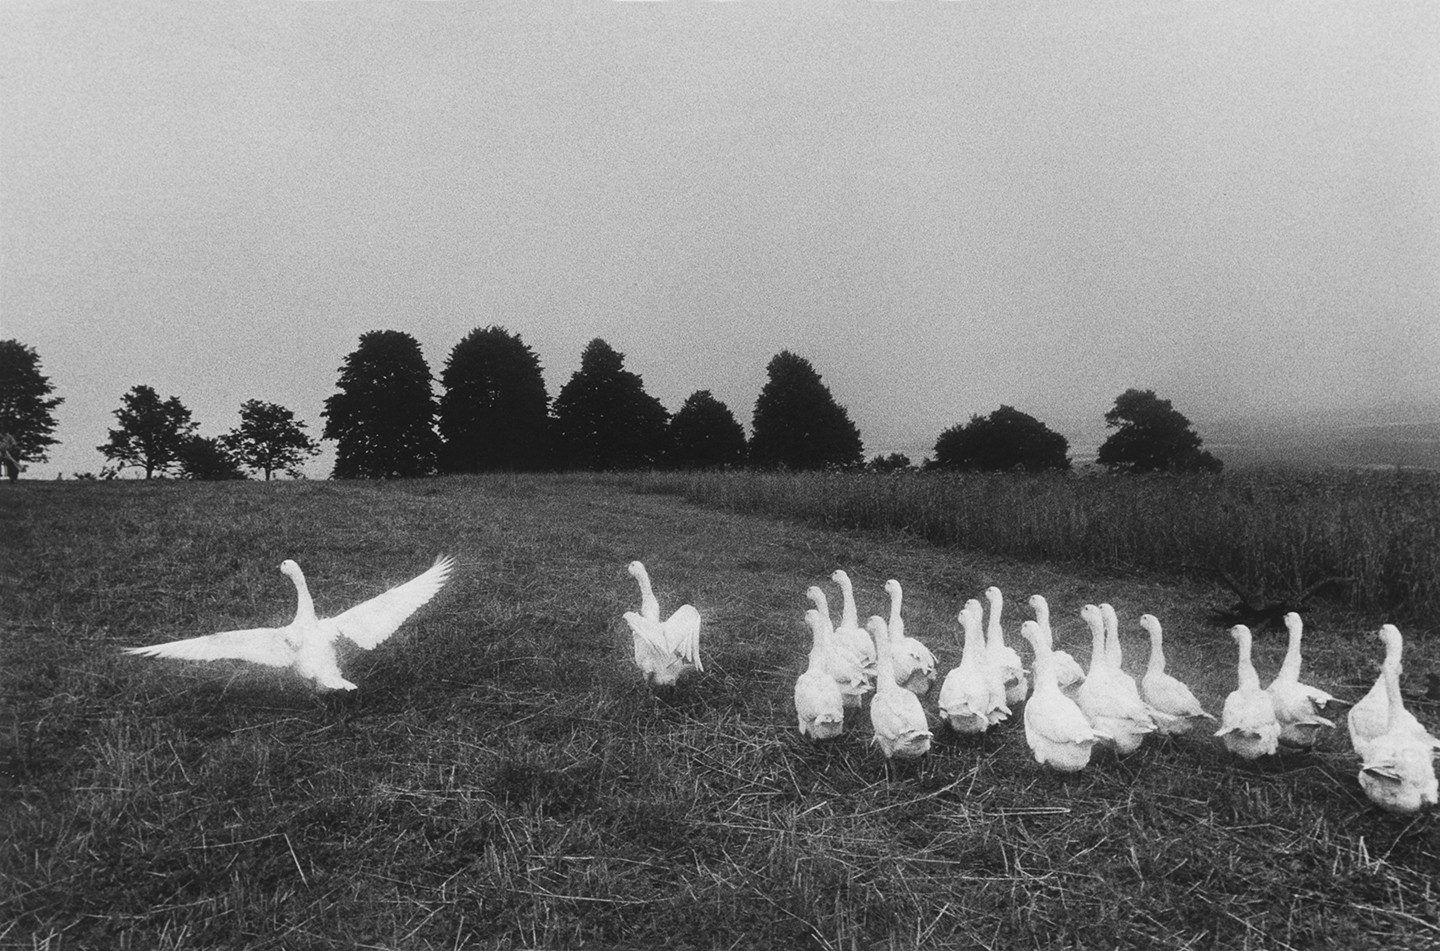 jill-hartley-1950-etats-unis-poland-geese-1977-211-x-318-cm